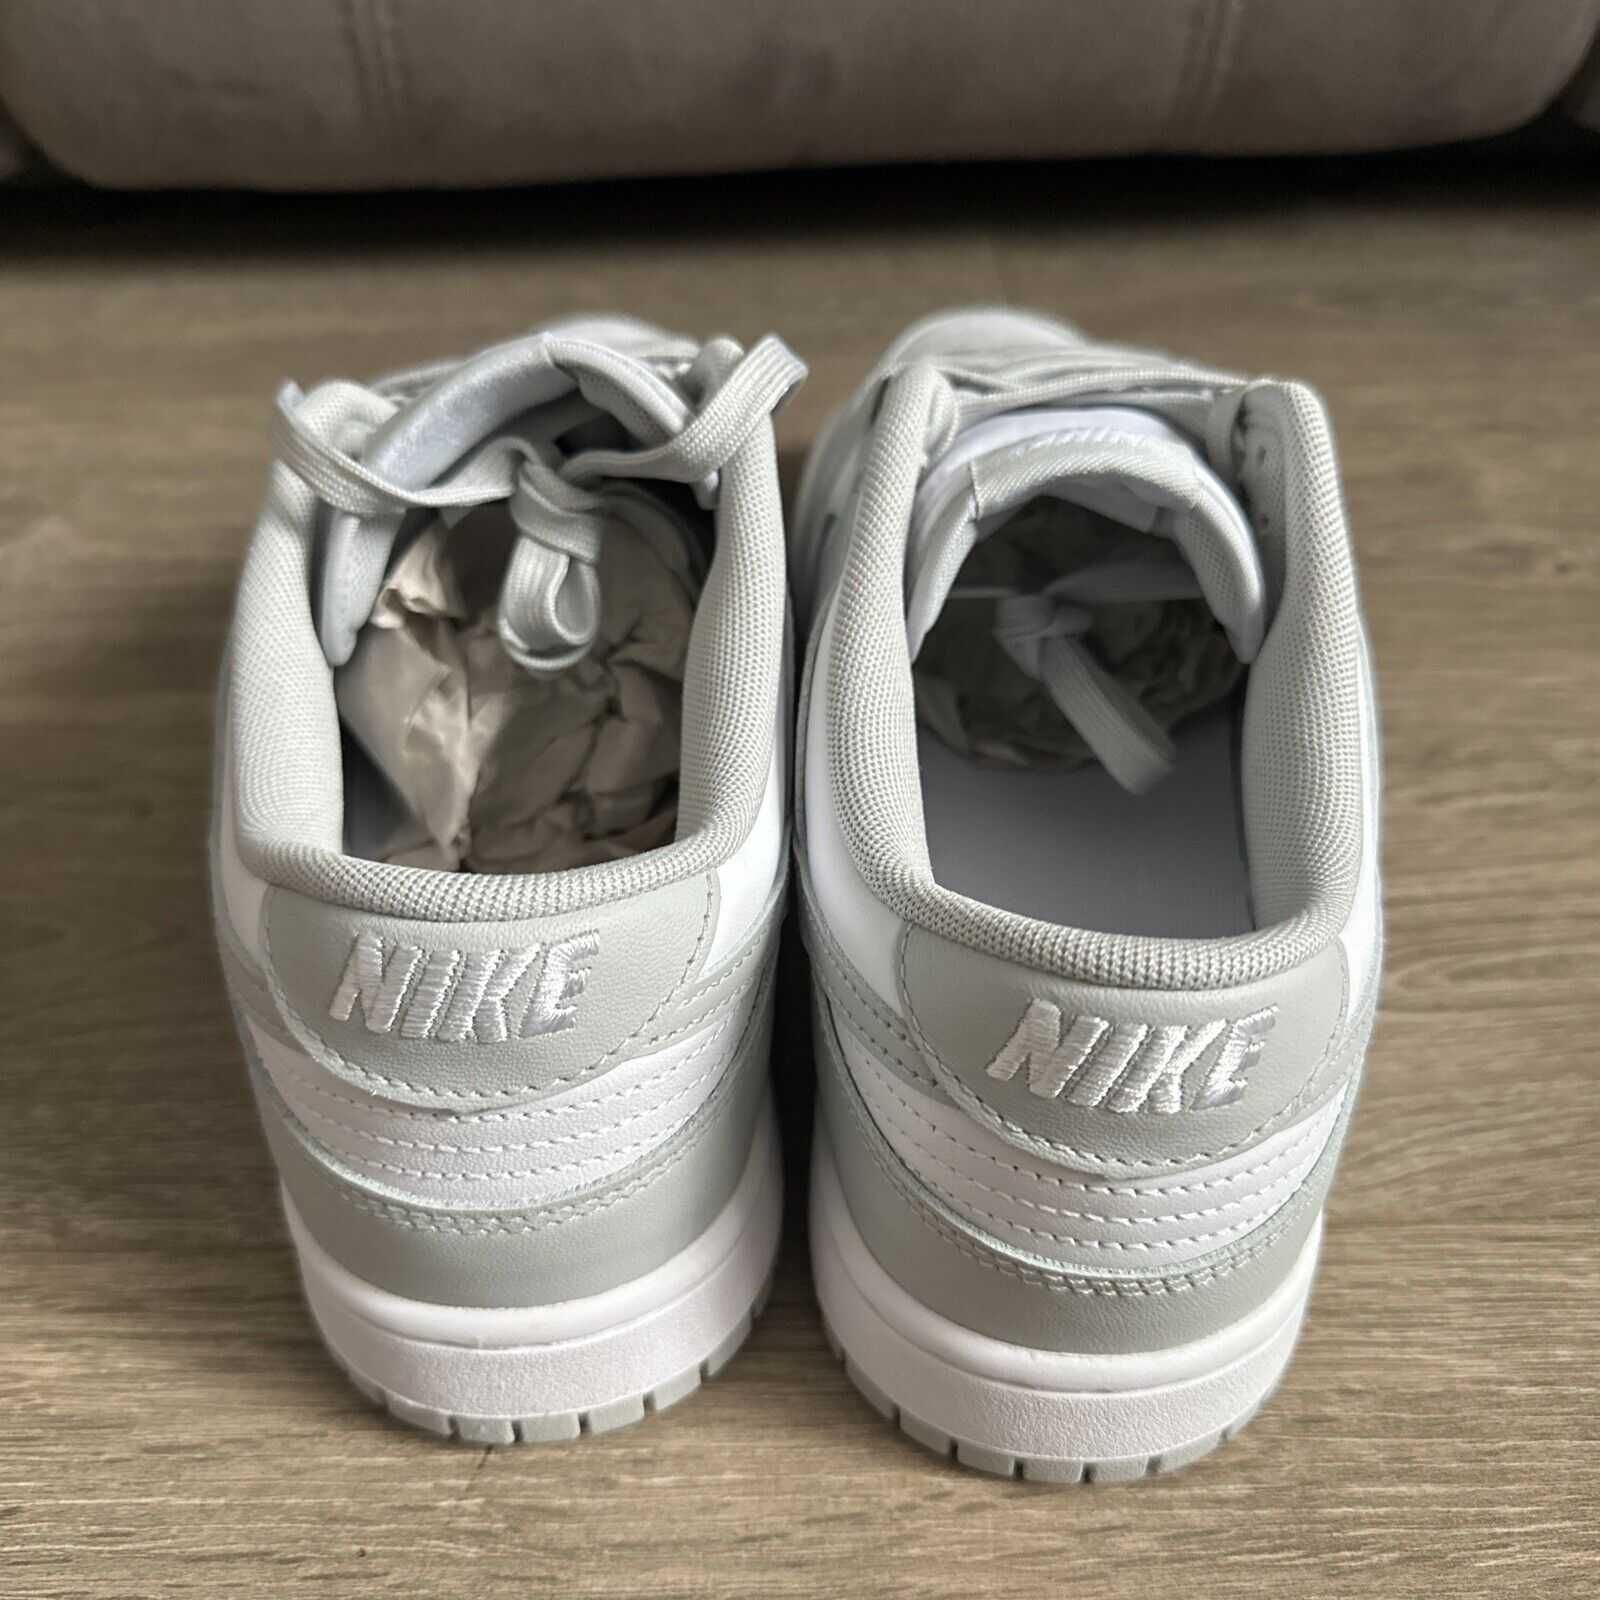 Adidasi-Sneakers Nike Air Dunk Grey Fog -STOC NOU